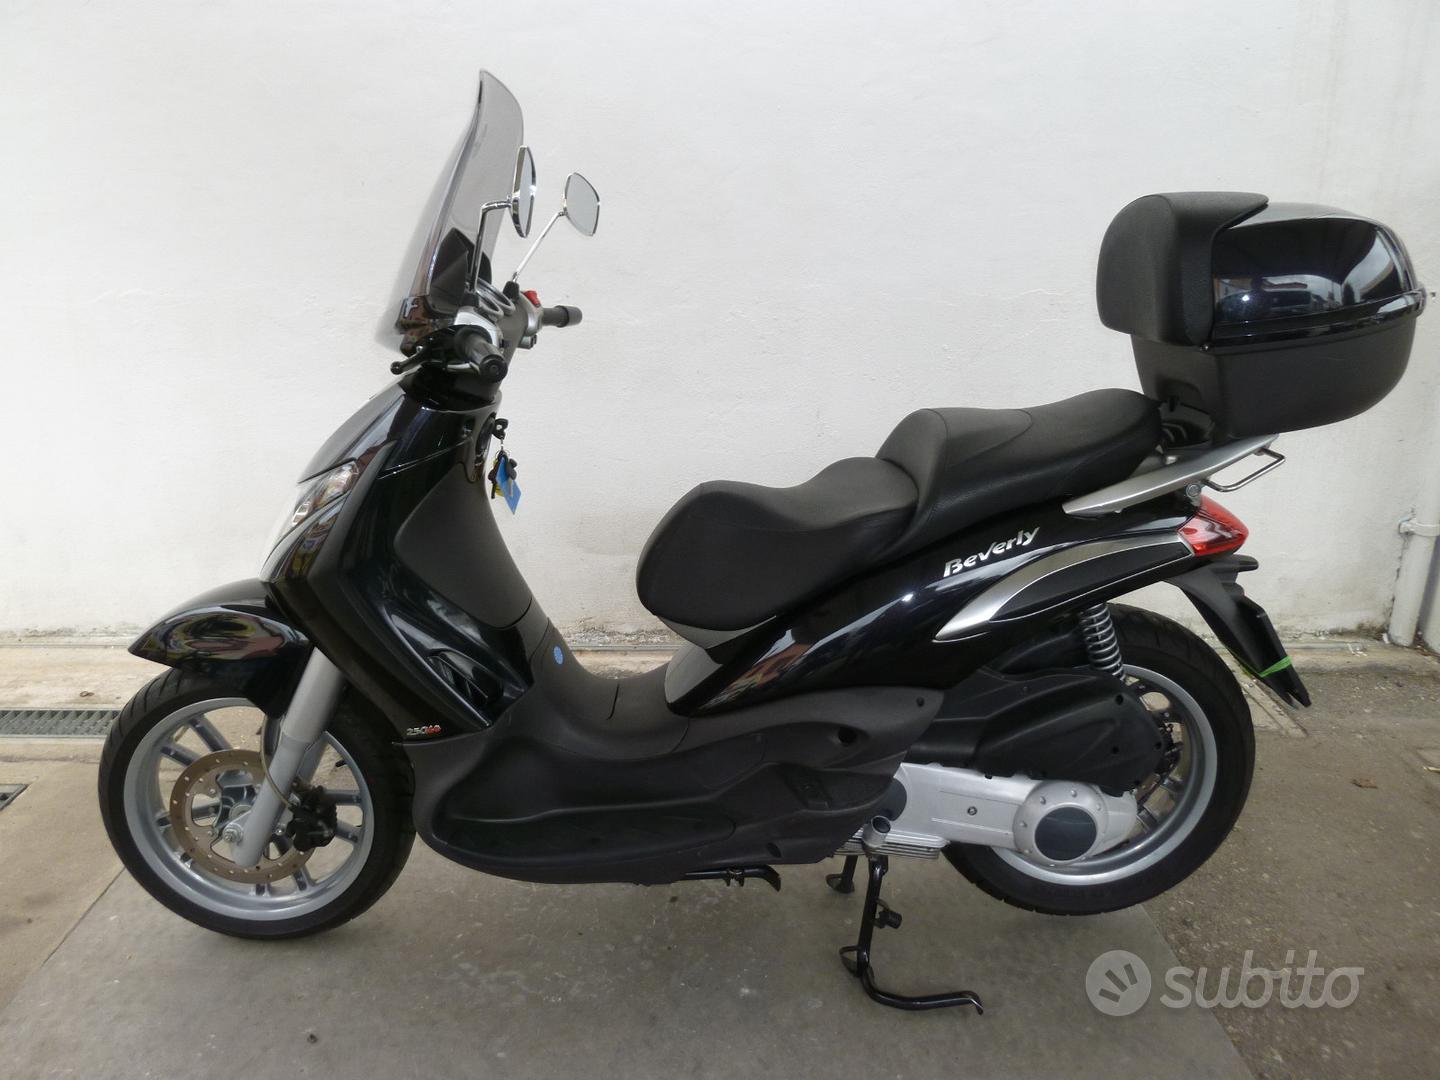 Subito - OK MOTOR di Ricci Francesco - Piaggio Beverly 250 - 2008 - Moto e  Scooter In vendita a Ravenna